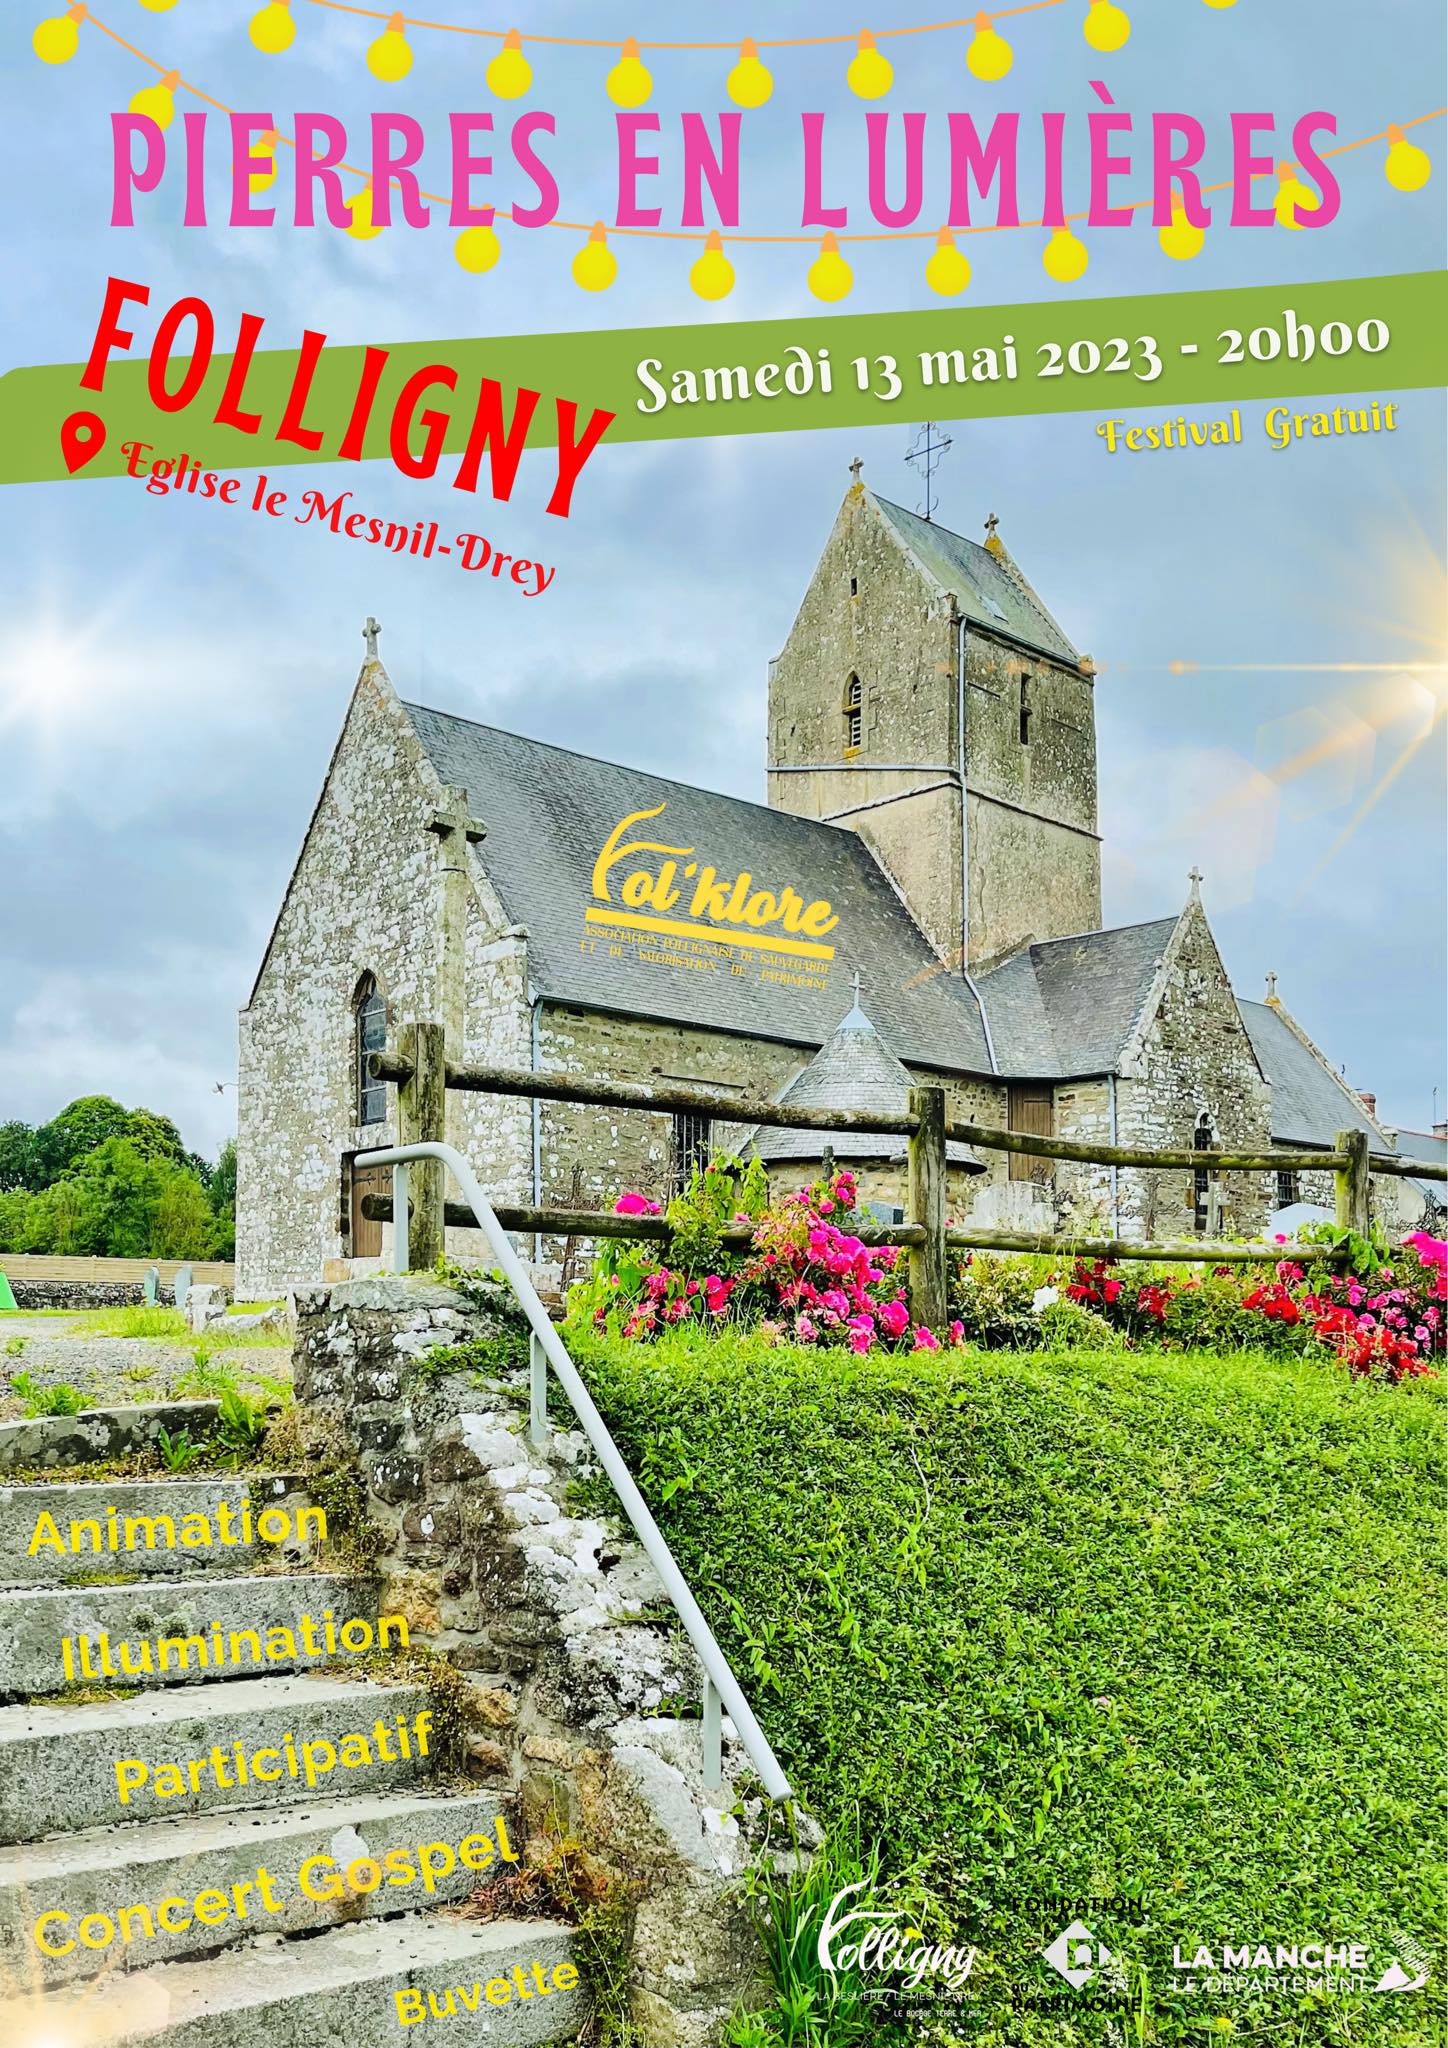 Commune de Folligny (Manche - 50)